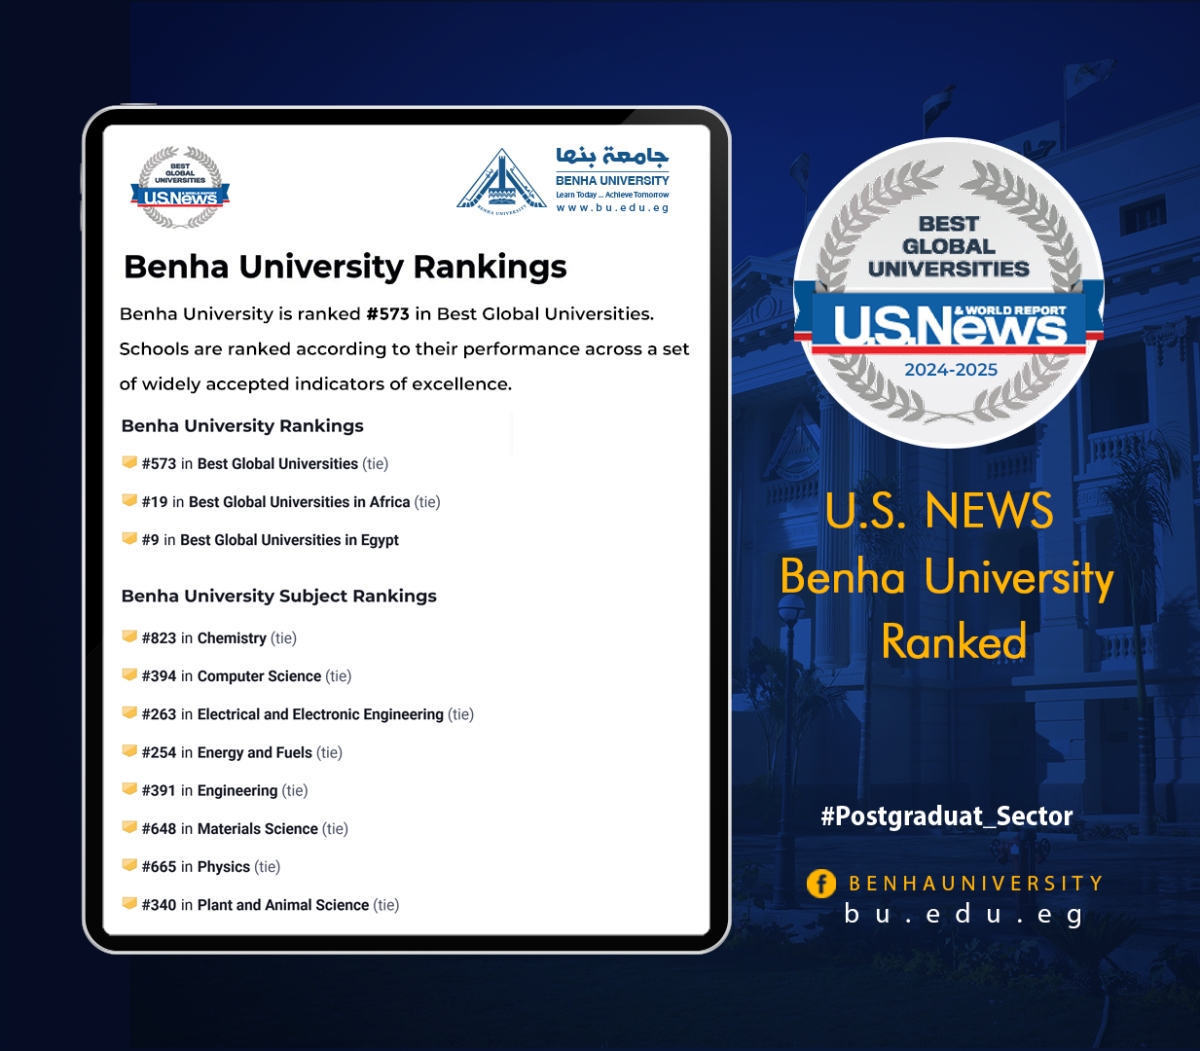 جامعة بنها تتقدم 370 مركز على المستوى العالمي بالتصنيف الأمريكي US news لعام 2024-2025